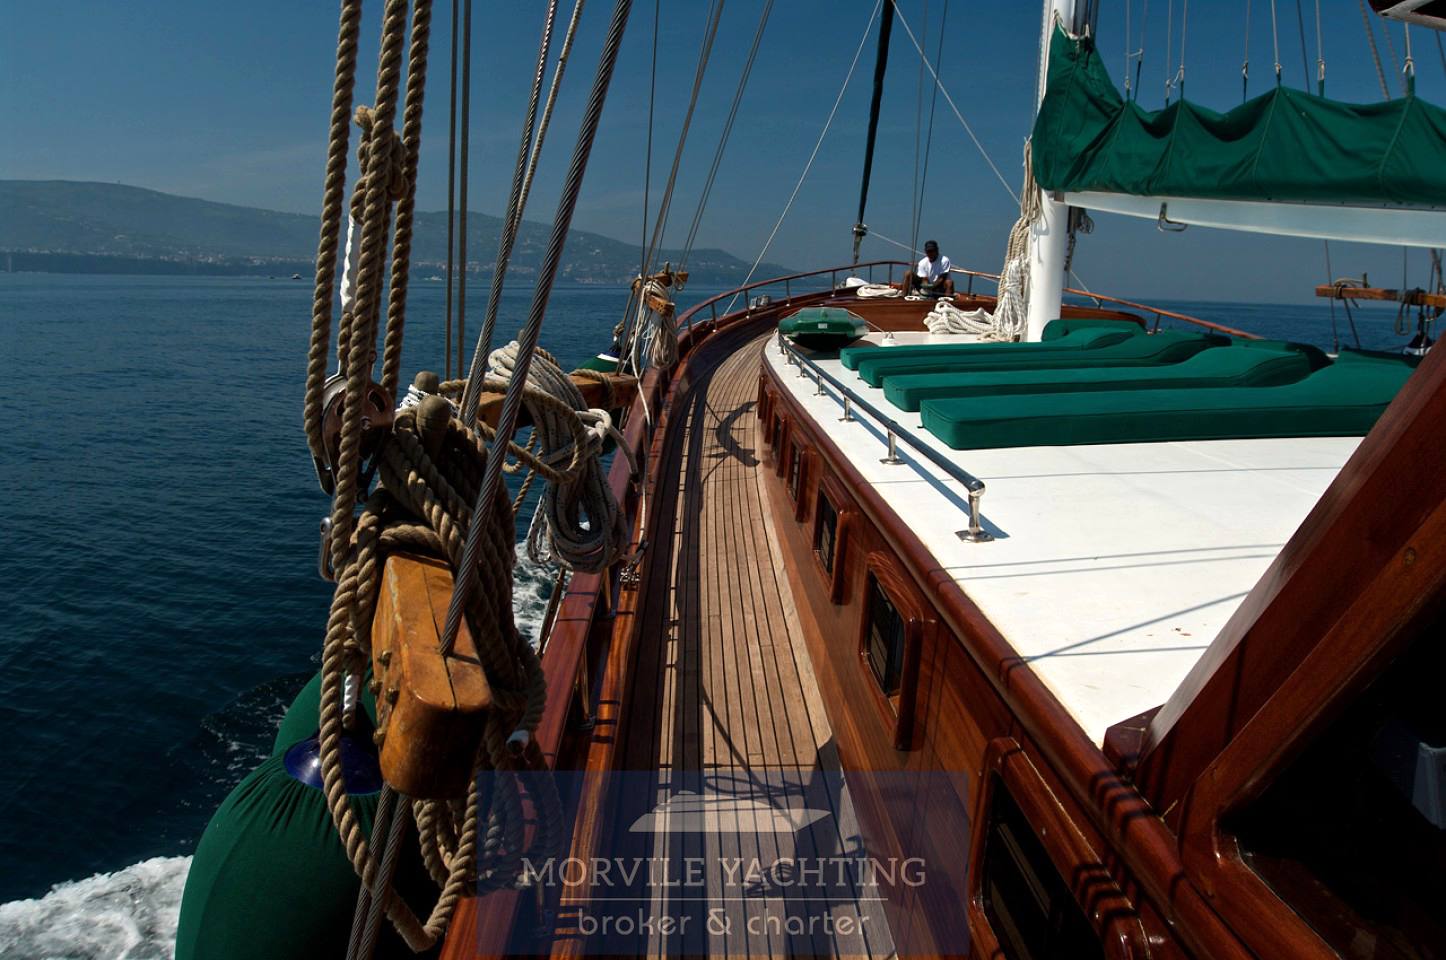 Goletta Deriya-deniz barco de motor